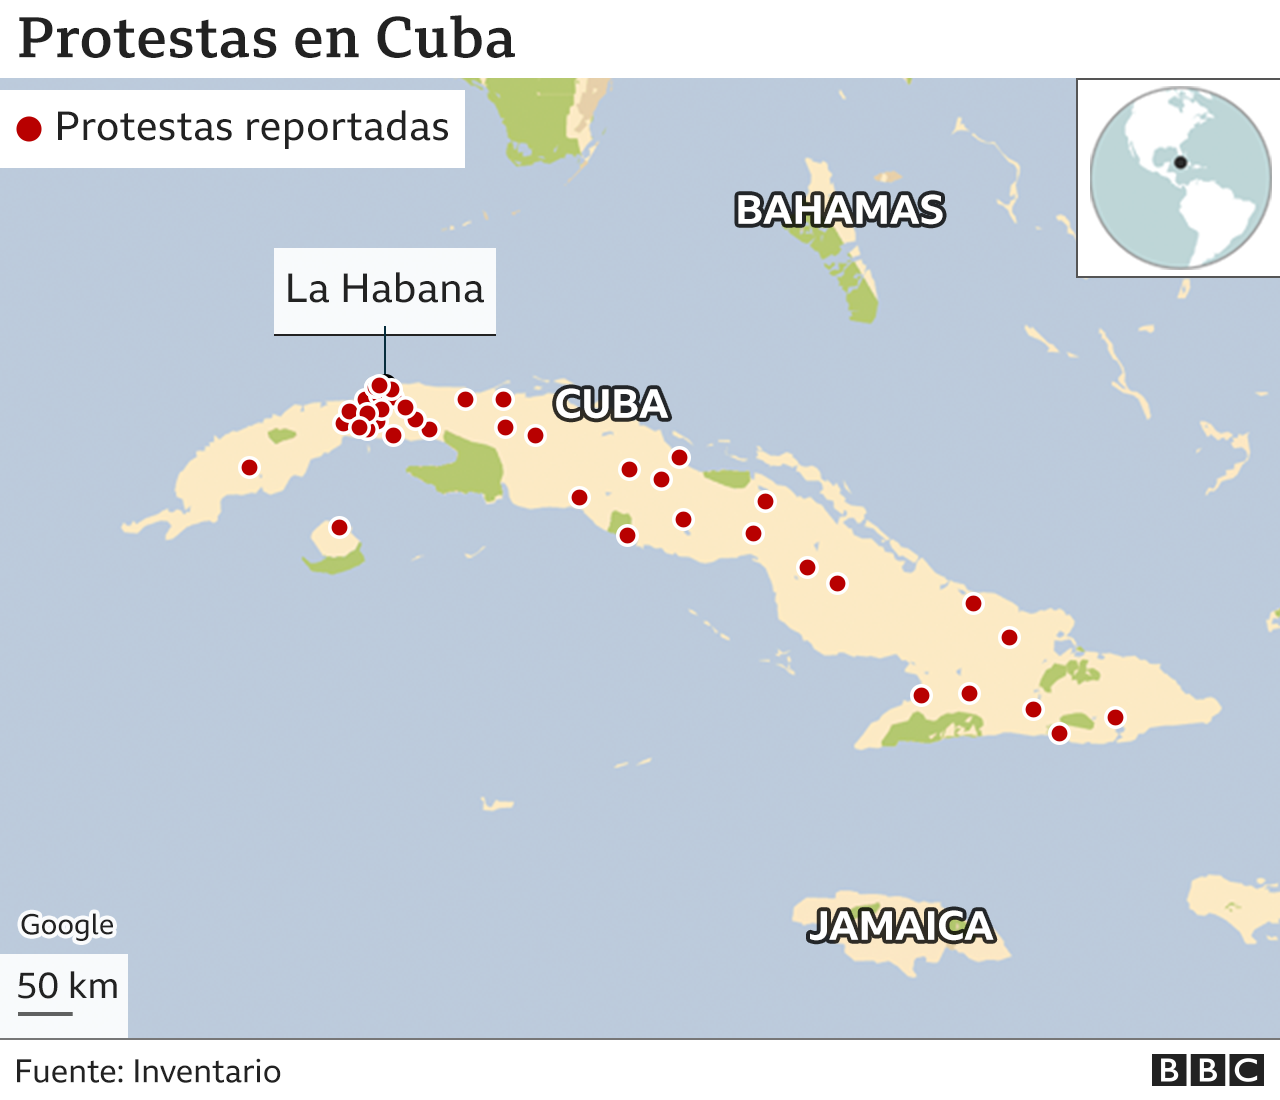 Históricas protestas contra desabastecimiento, inflación, y falta de libertades en Cuba _119358332_cuba_protests_map-nc